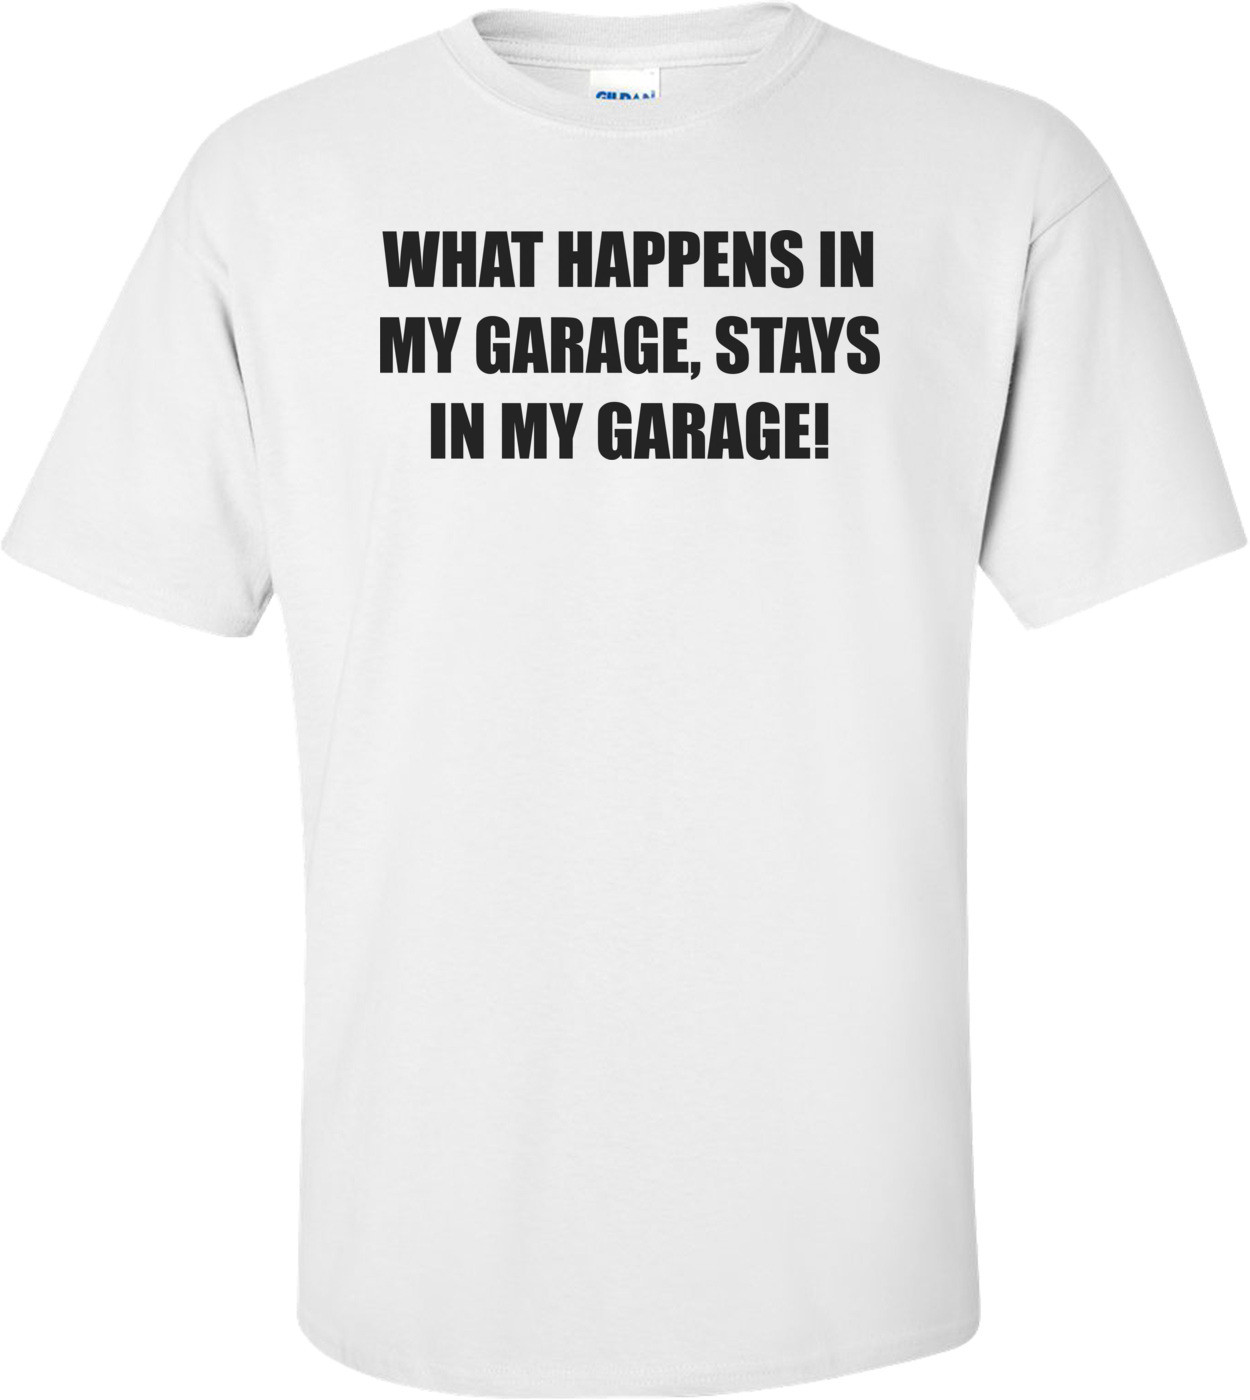 WHAT HAPPENS IN MY GARAGE, STAYS IN MY GARAGE! Shirt